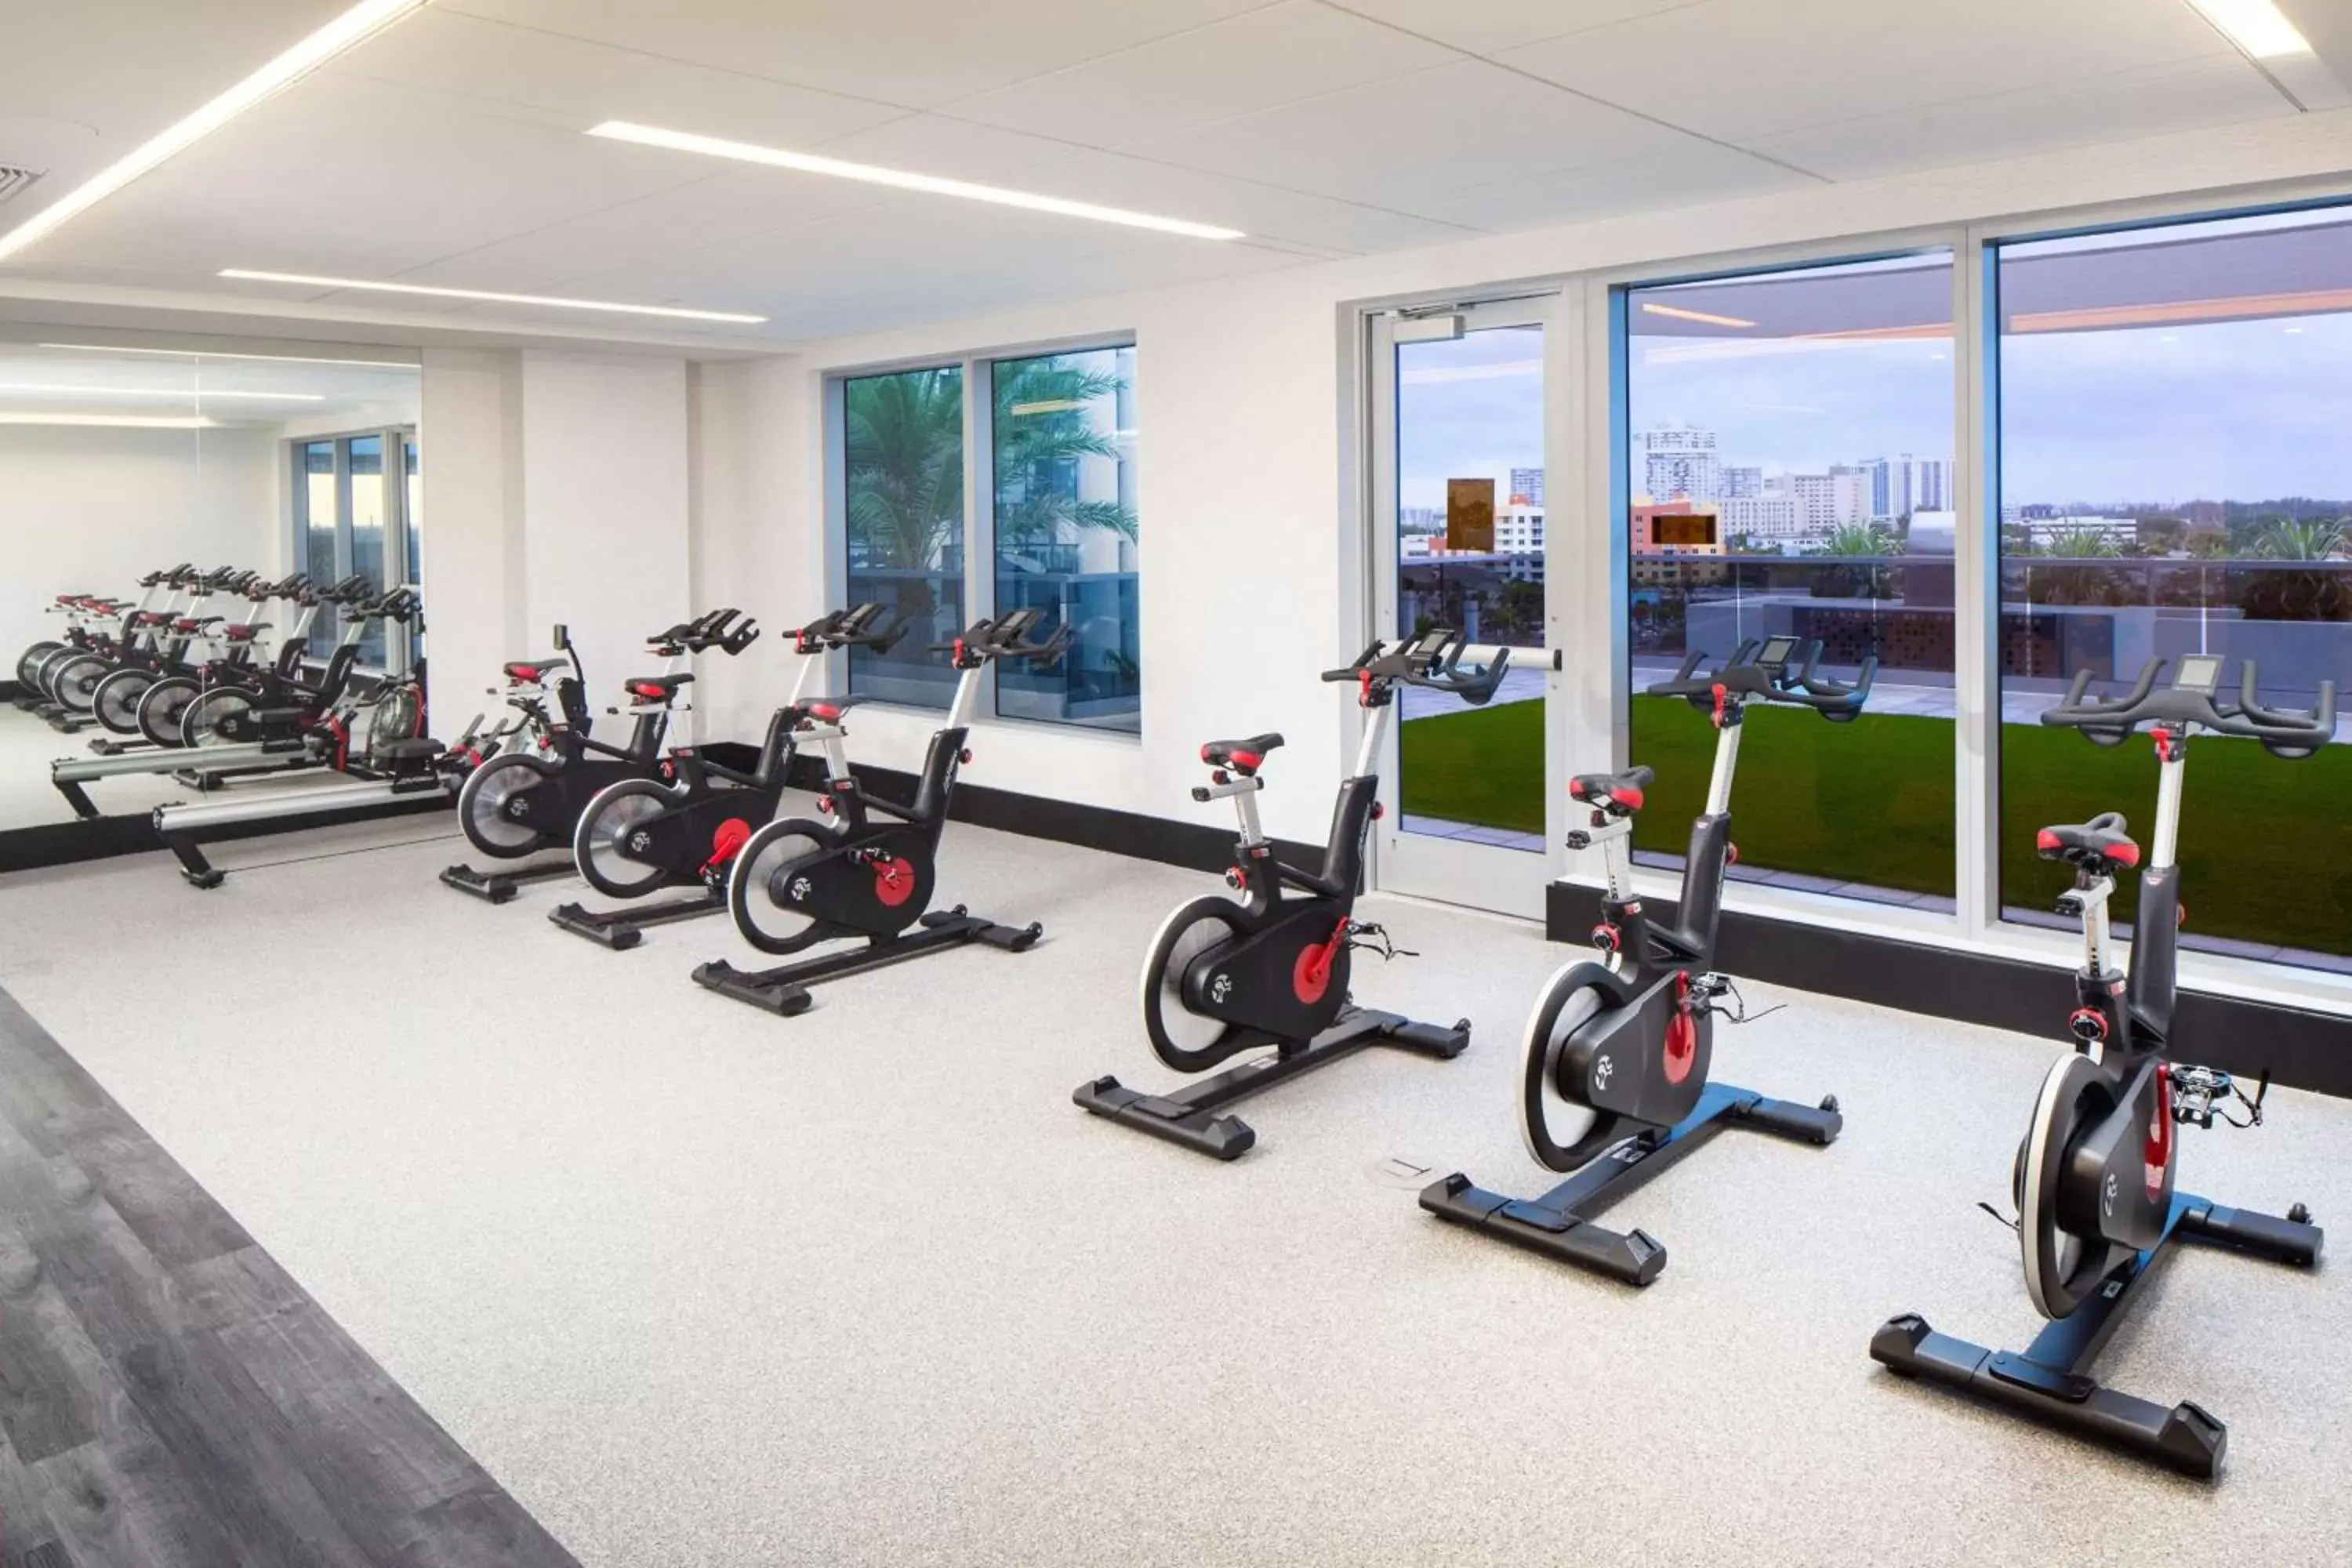 Fitness centre/facilities, Fitness Center/Facilities in Hilton Aventura Miami